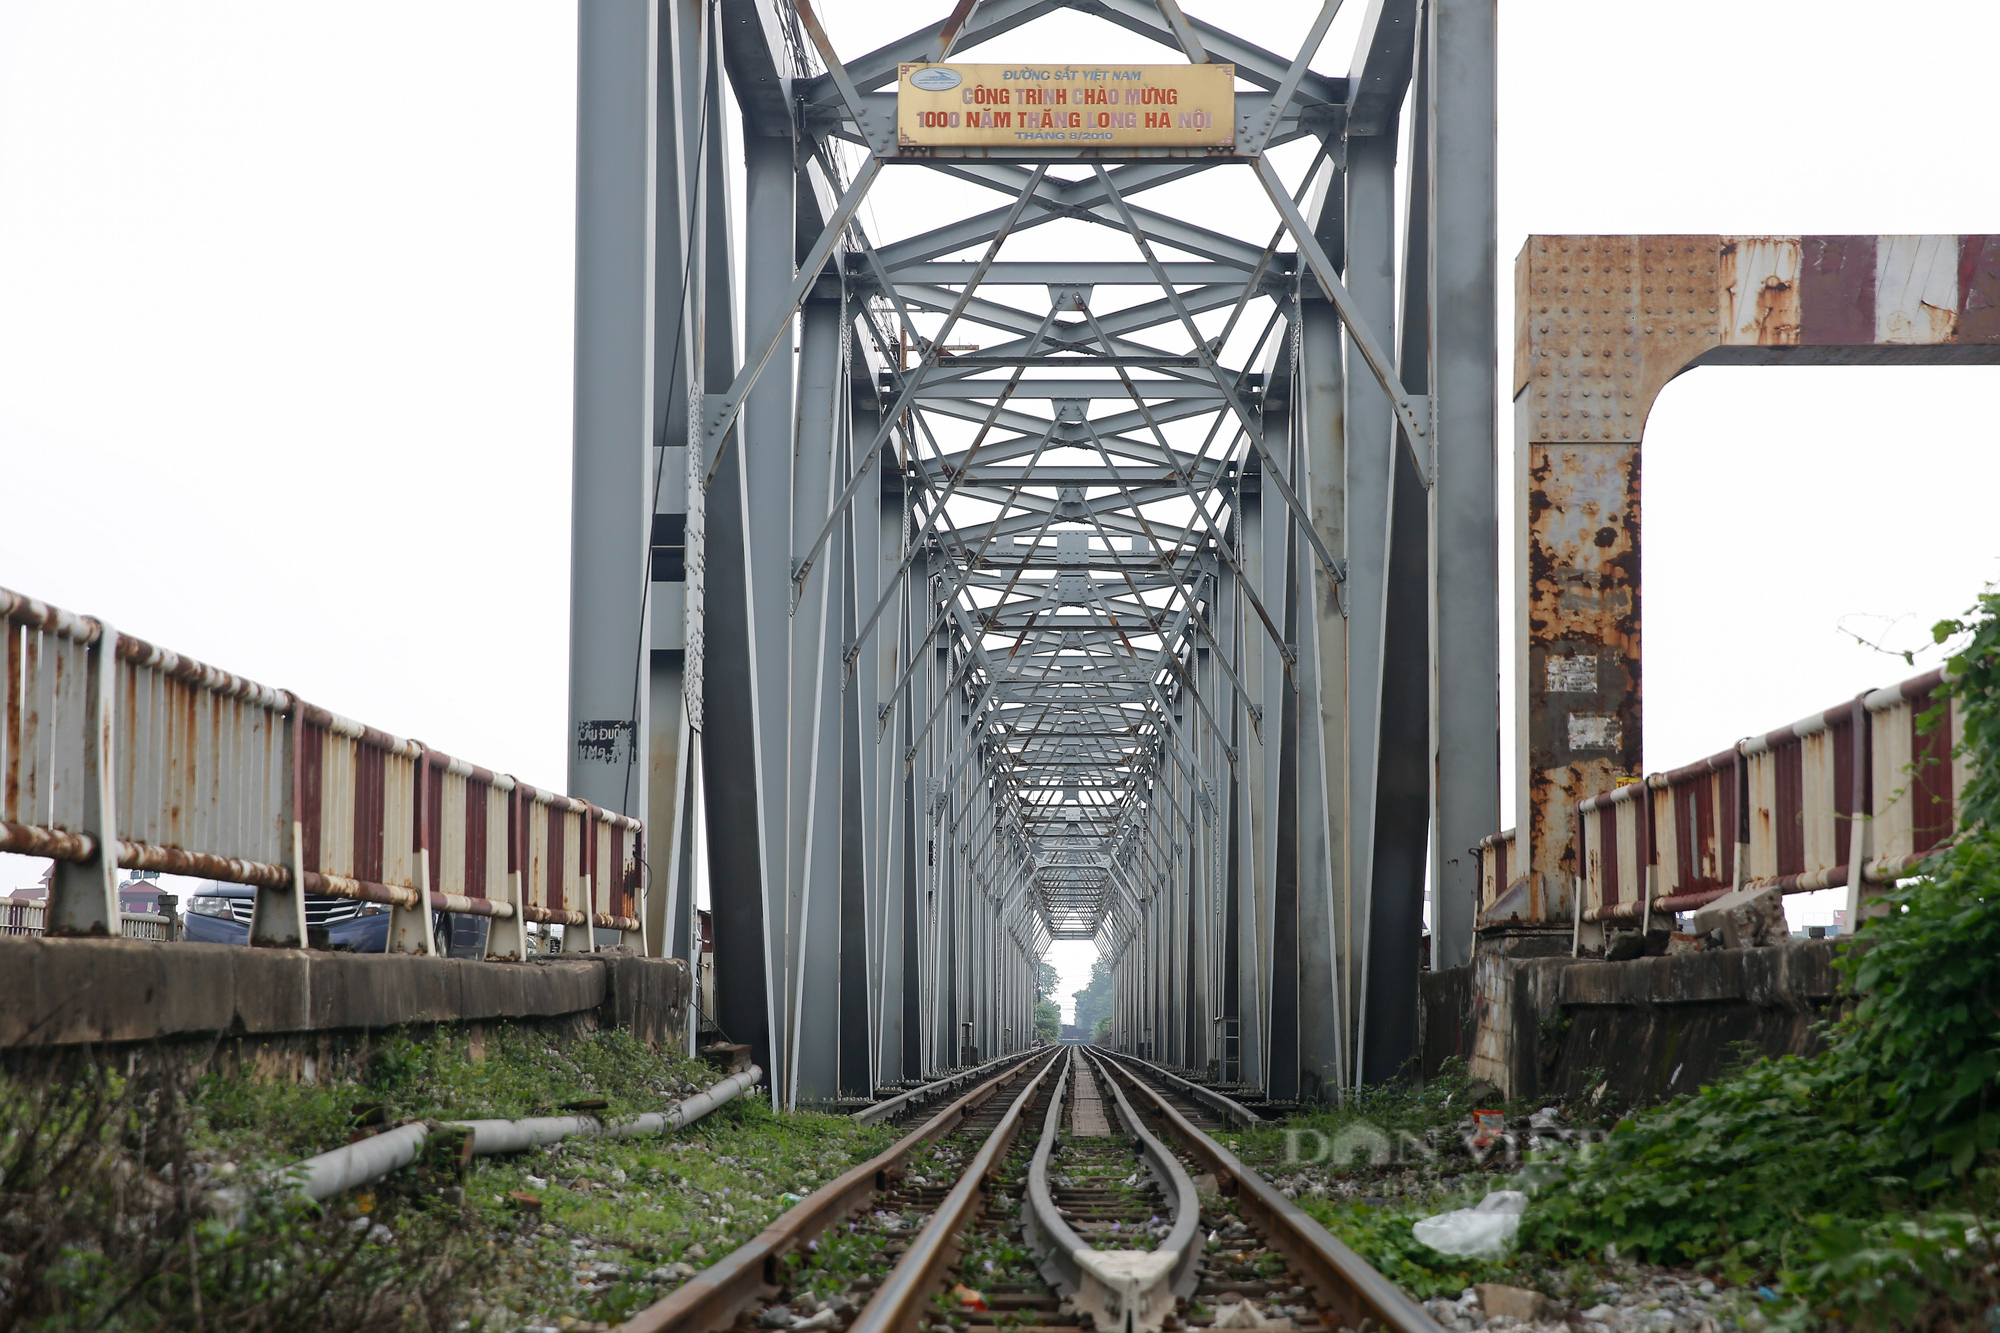 Hà Nội: Cận cảnh cây cầu xuống cấp nghiêm trọng được đề xuất xây mới trị giá gần 1800 tỷ đồng - Ảnh 11.